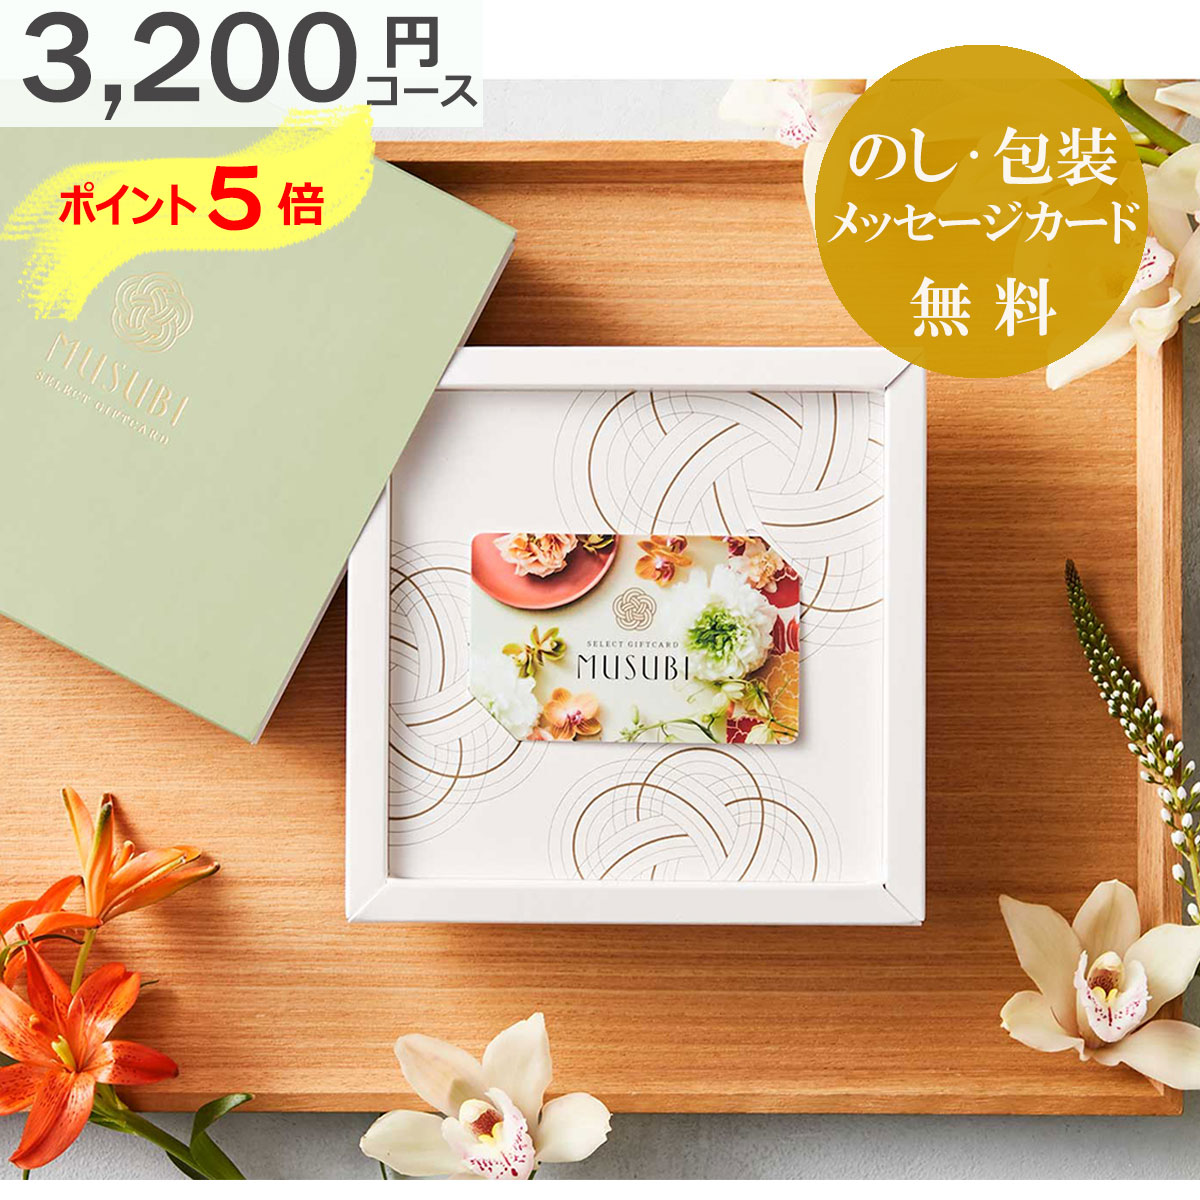  カタログギフト 内祝い カードタイプ ベルメゾン オリジナル CARD-MUSUBI ( 玄黄 げんこう ) 人気 おすすめ 